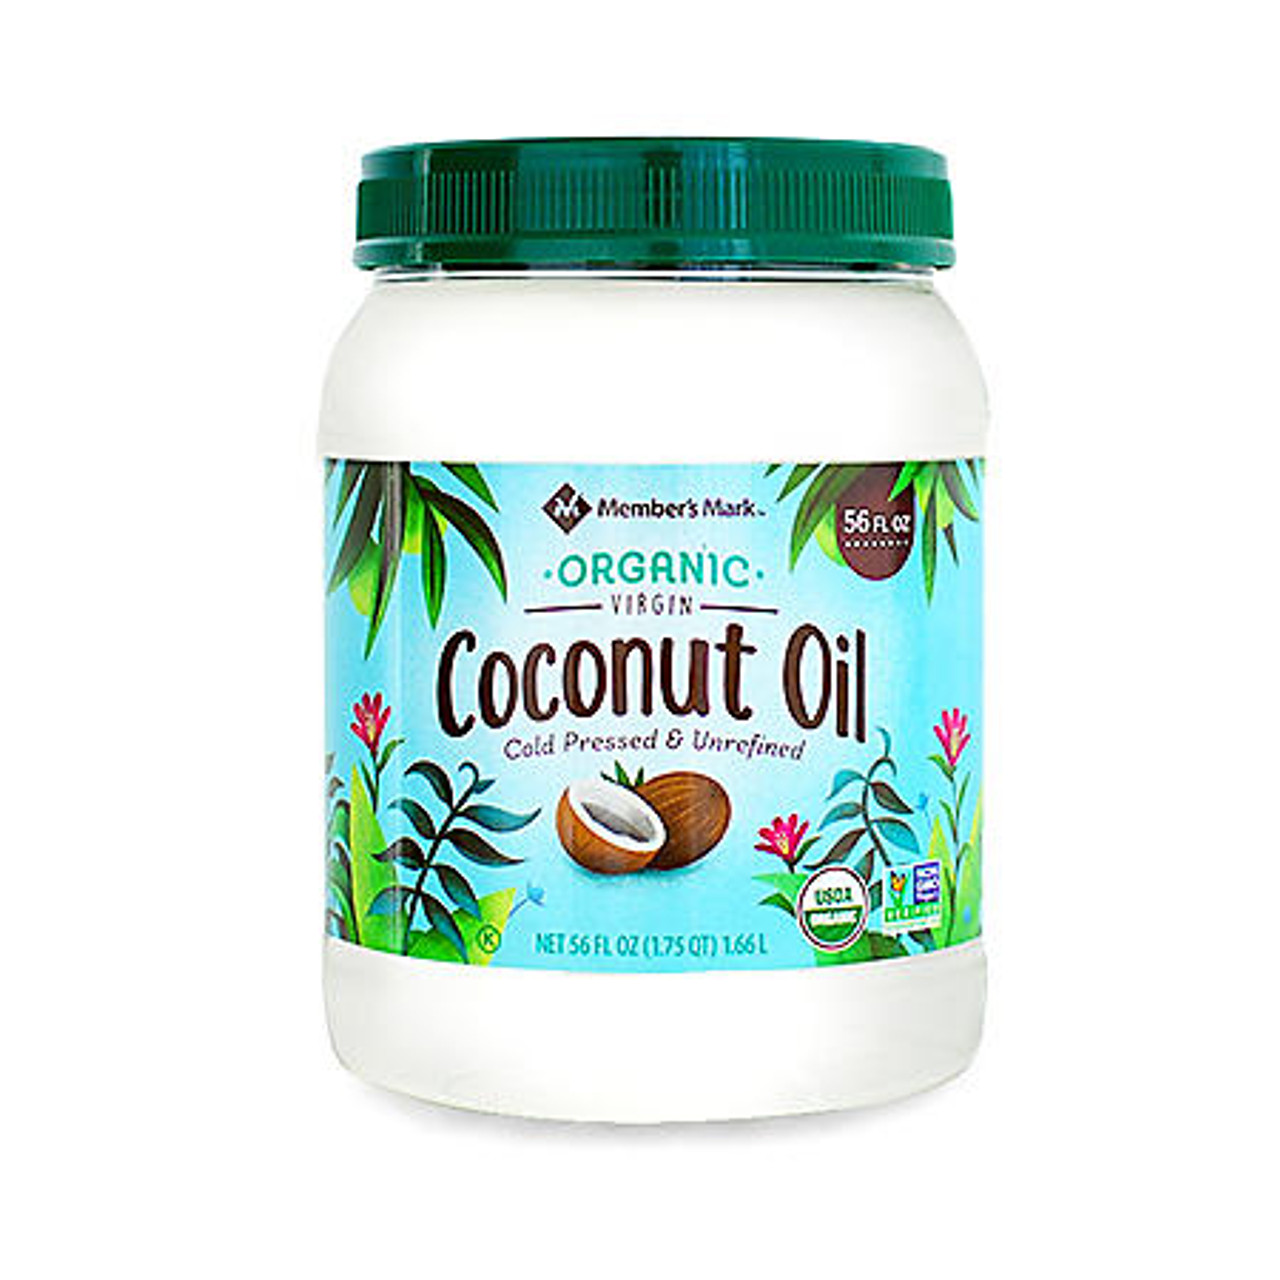 Member's Mark Organic Virgin Coconut Oil (56 oz.) - *In Store